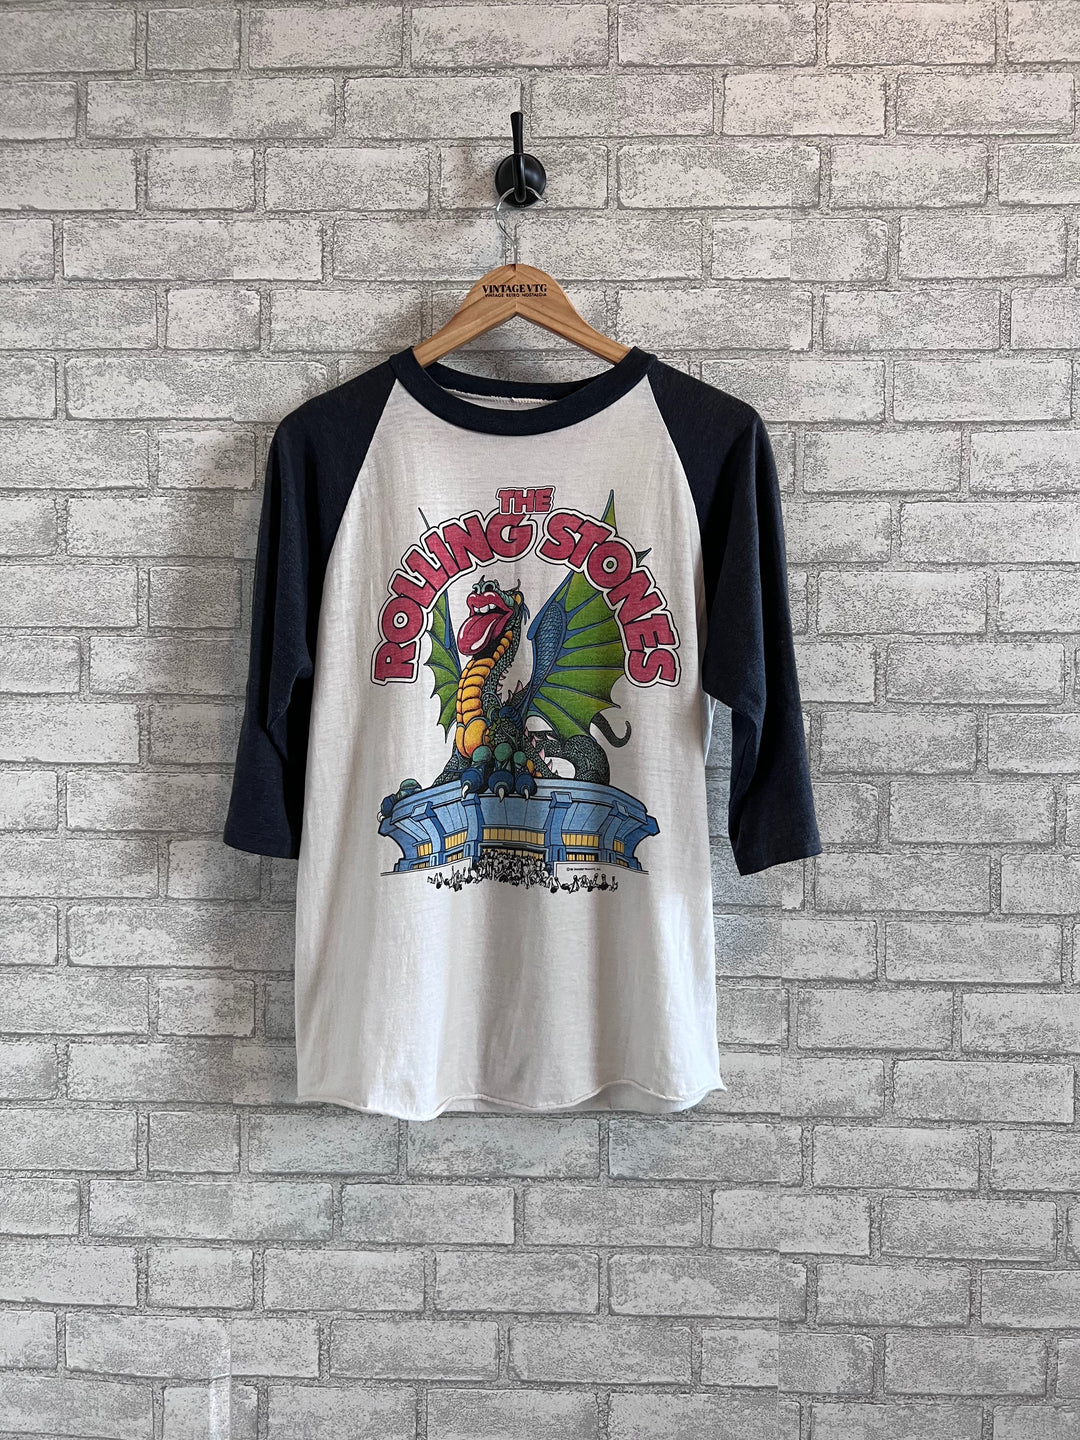 Rare Vintage T-shirt 1981 Rolling Stones ZZ TOP tour shirt